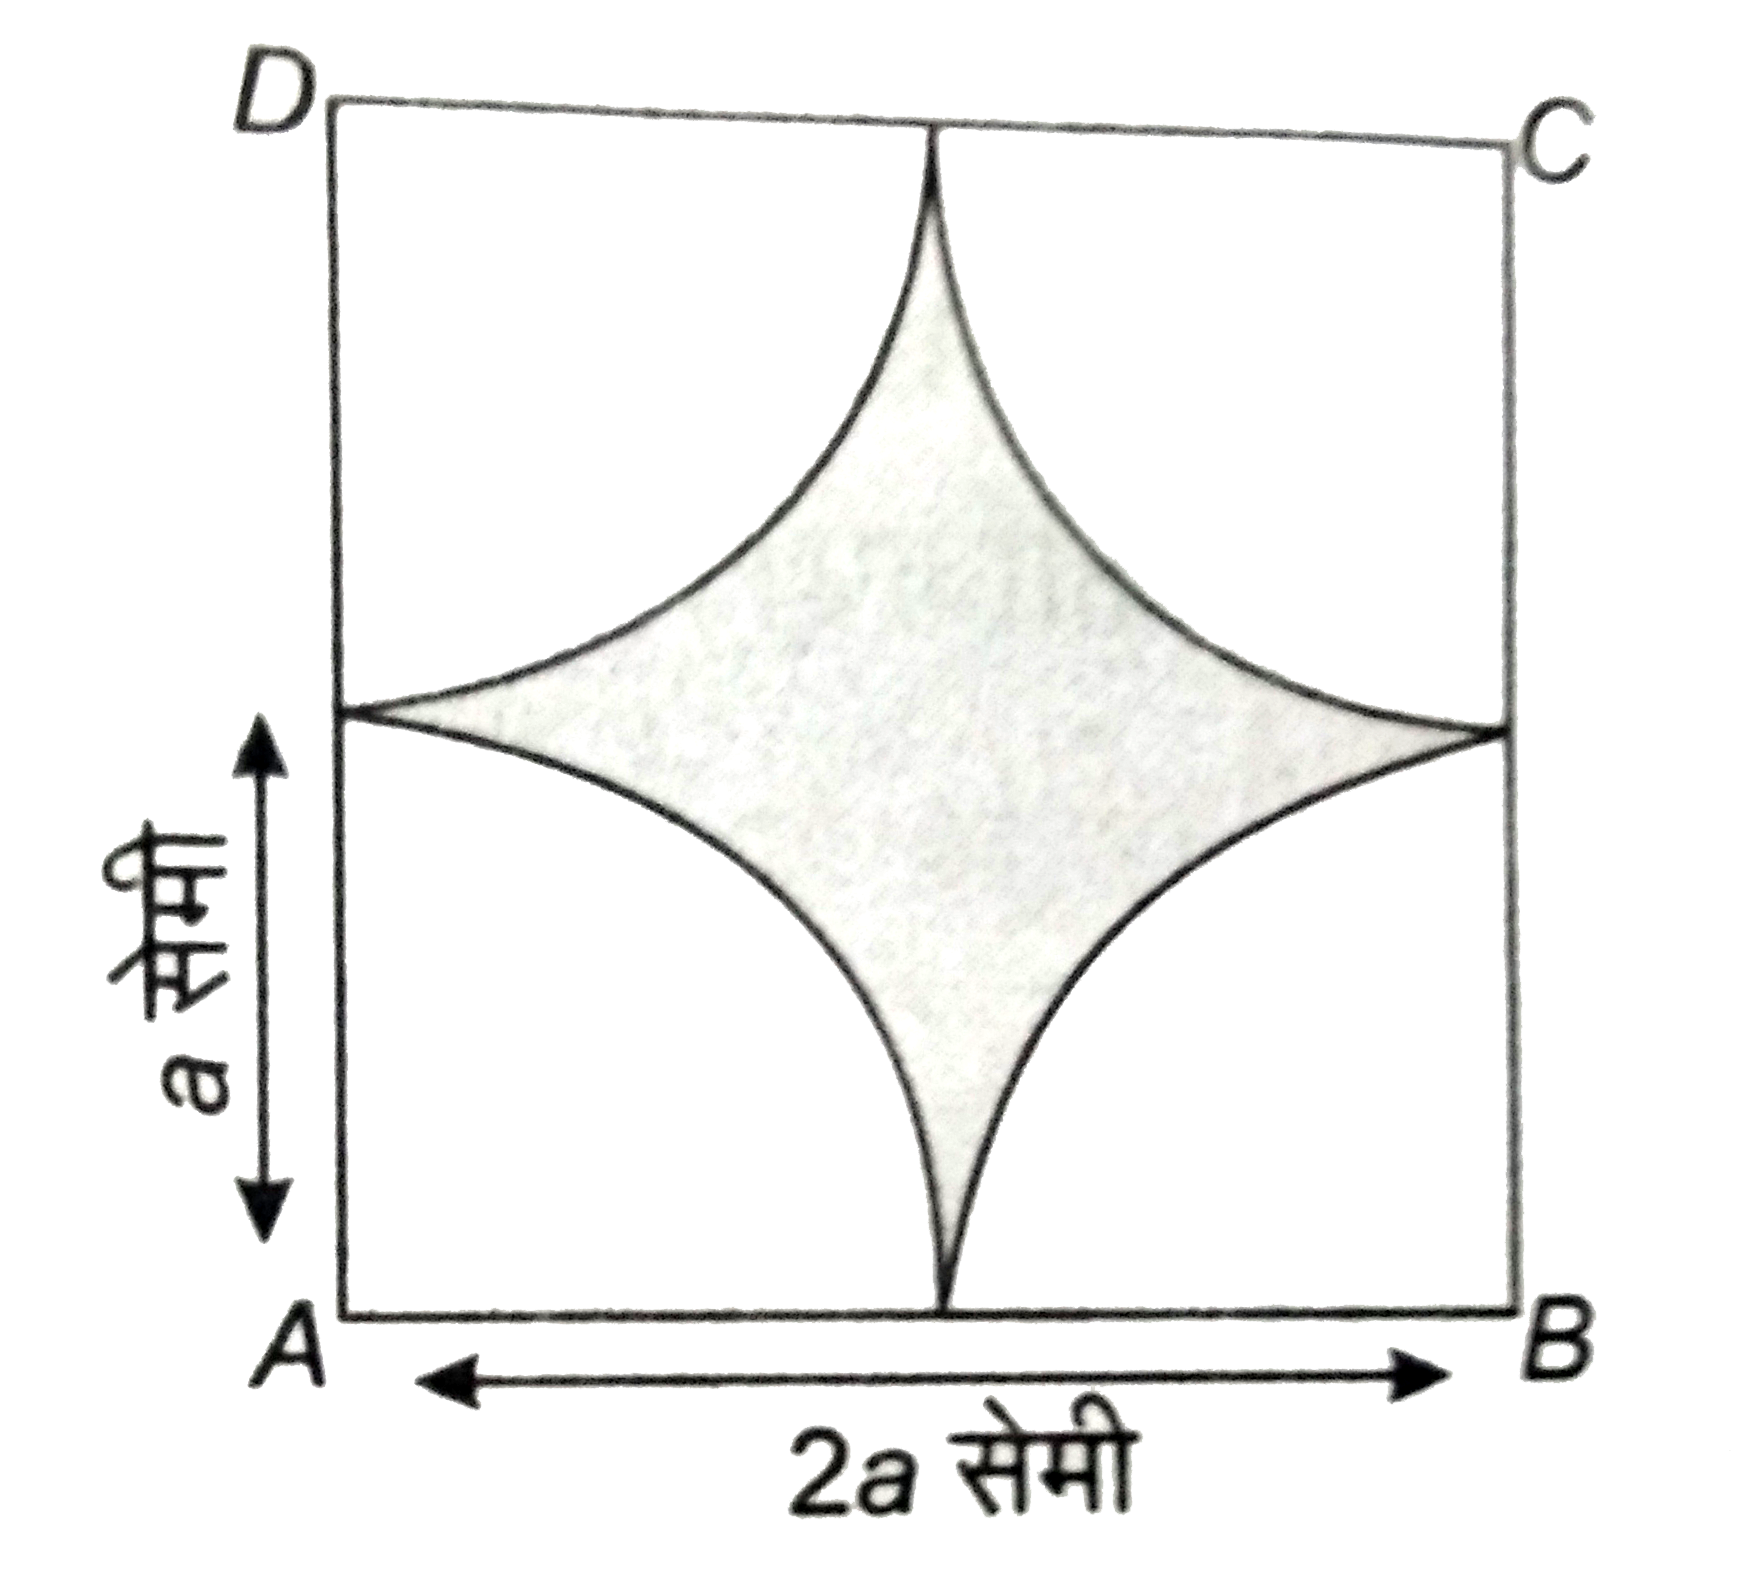 2a सेमी  भुजा के के वर्ग में चार  चतुर्थांश  वृत्त शीर्षों को केंद्र  लेकर तथा  a  सेमी  त्रिज्या  से खींचे  गये है । छायांकित  भाग  का क्षेत्रफल  ज्ञात कीजिए ।